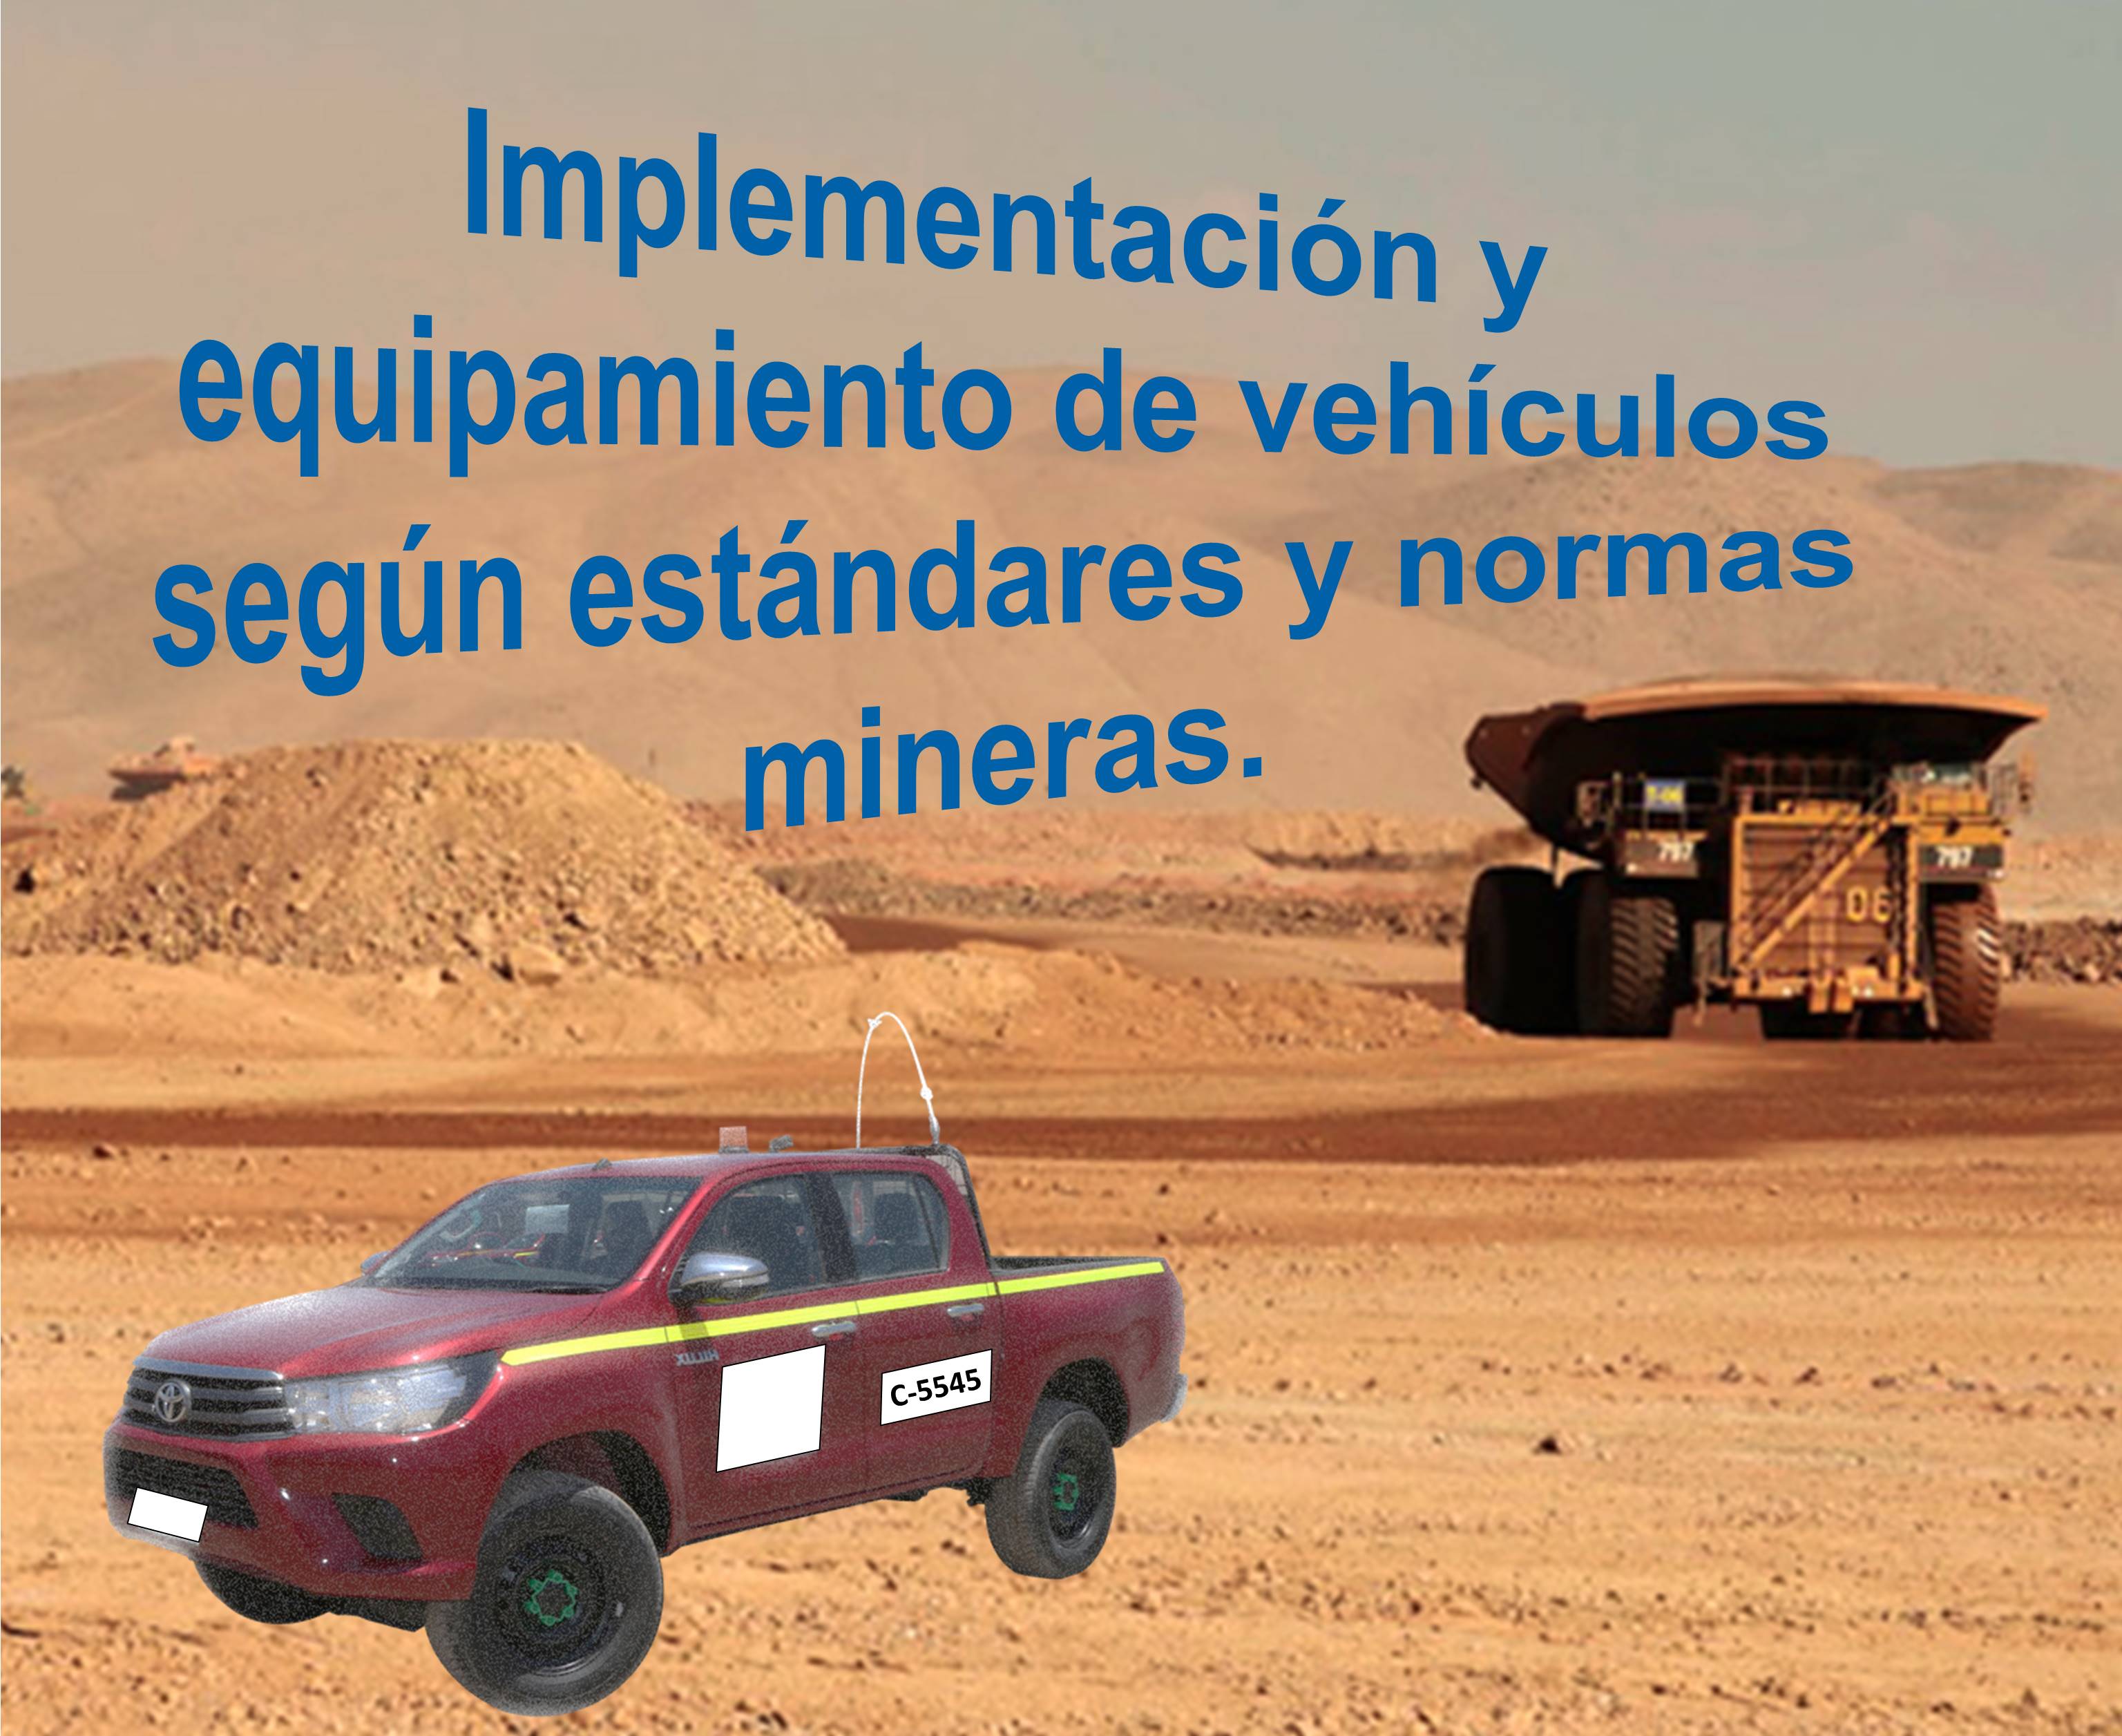 Implementación y equipamiento de vehículos según estándares y normas mineras.